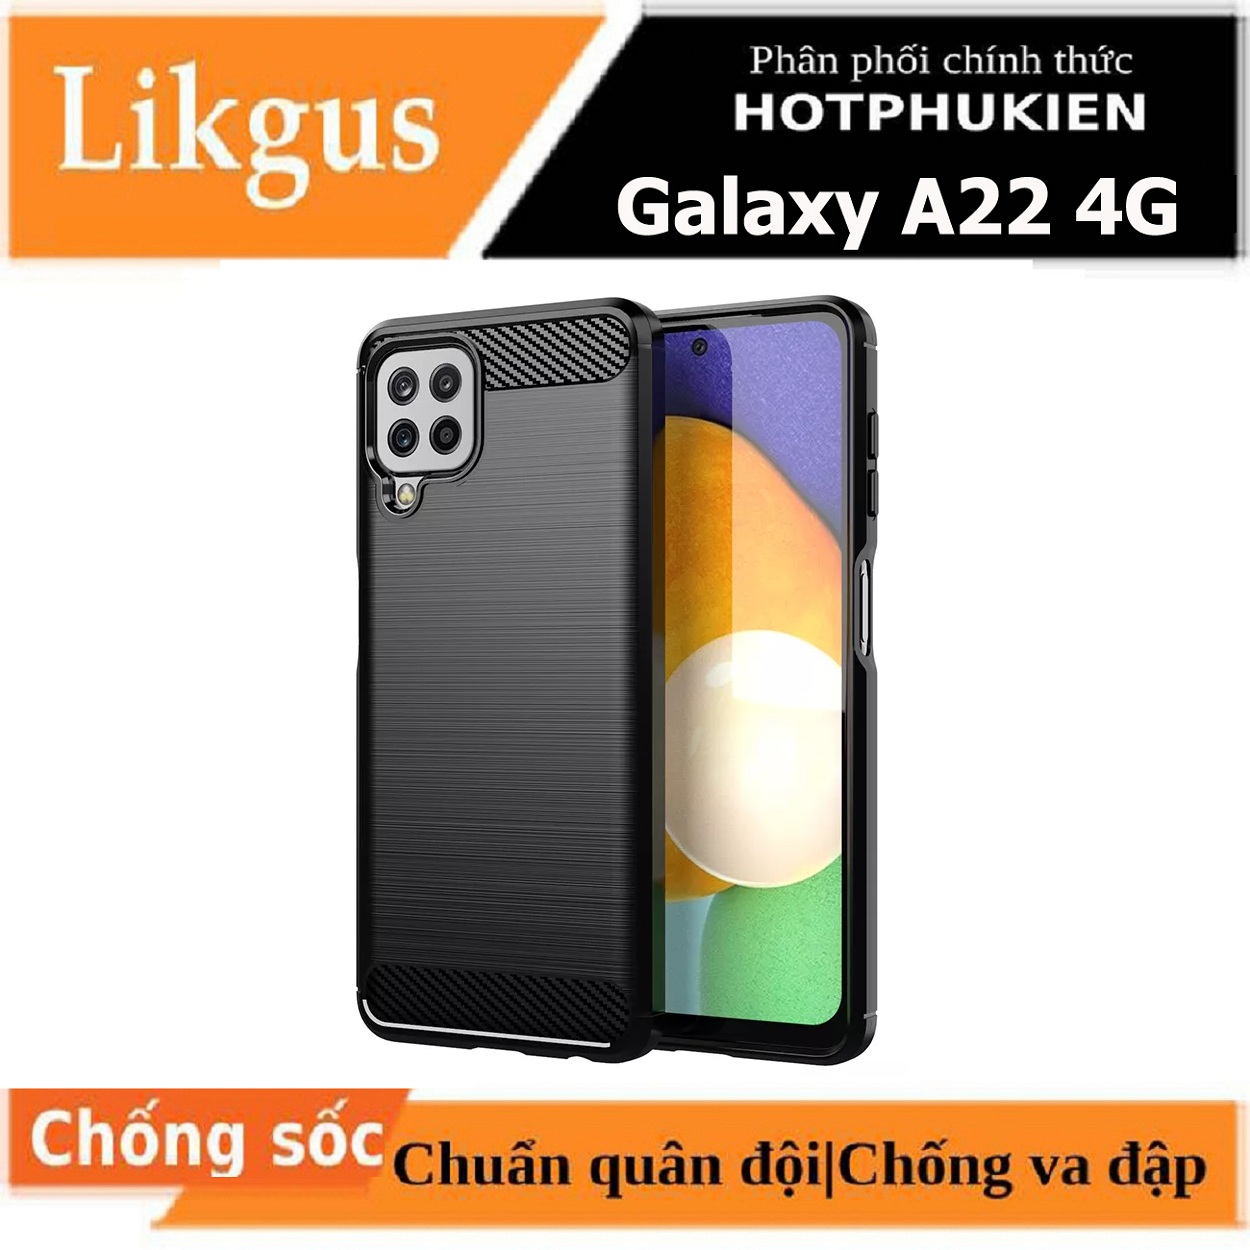 Ốp lưng chống sốc cho Samsung Galaxy A22 4G / M22 / M32 hiệu Likgus vân kim loại , chống sốc chuẩn quân đội, chống va đập - hàng nhập khẩu